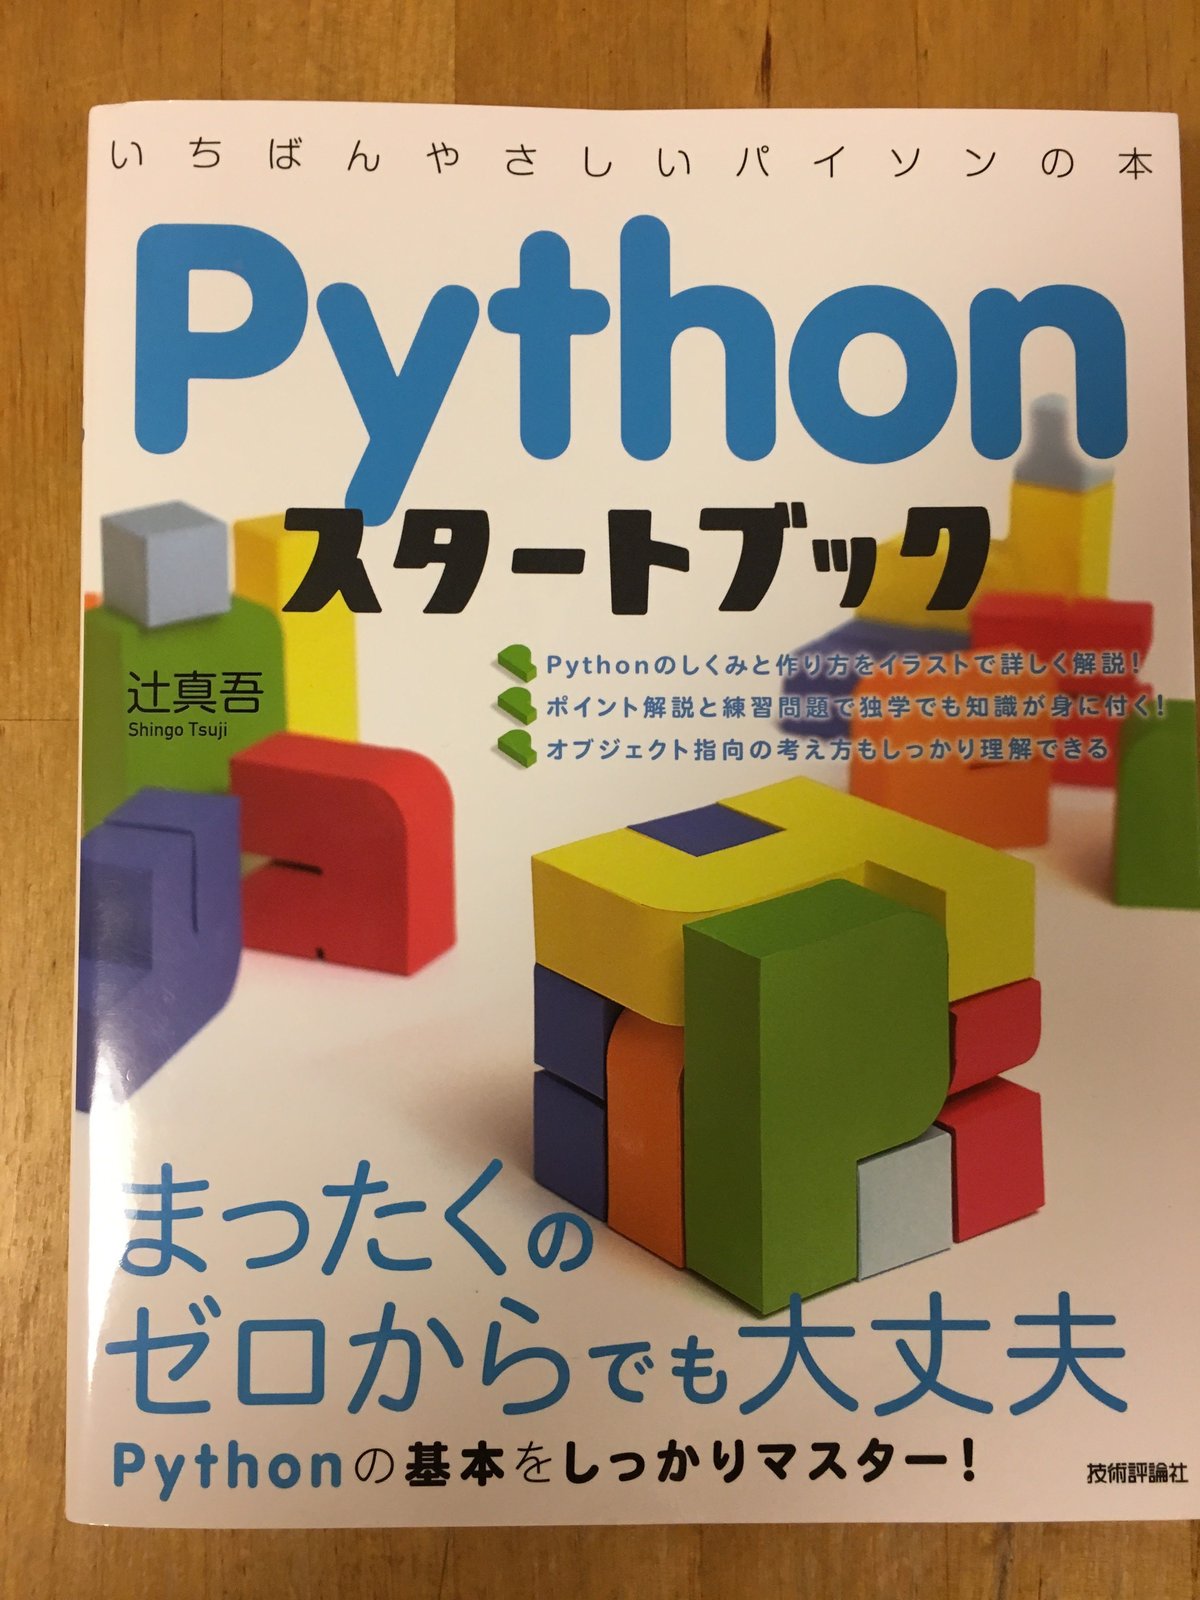 Pythonスタートブック : 一番やさしいパイソンの本 - コンピュータ・IT